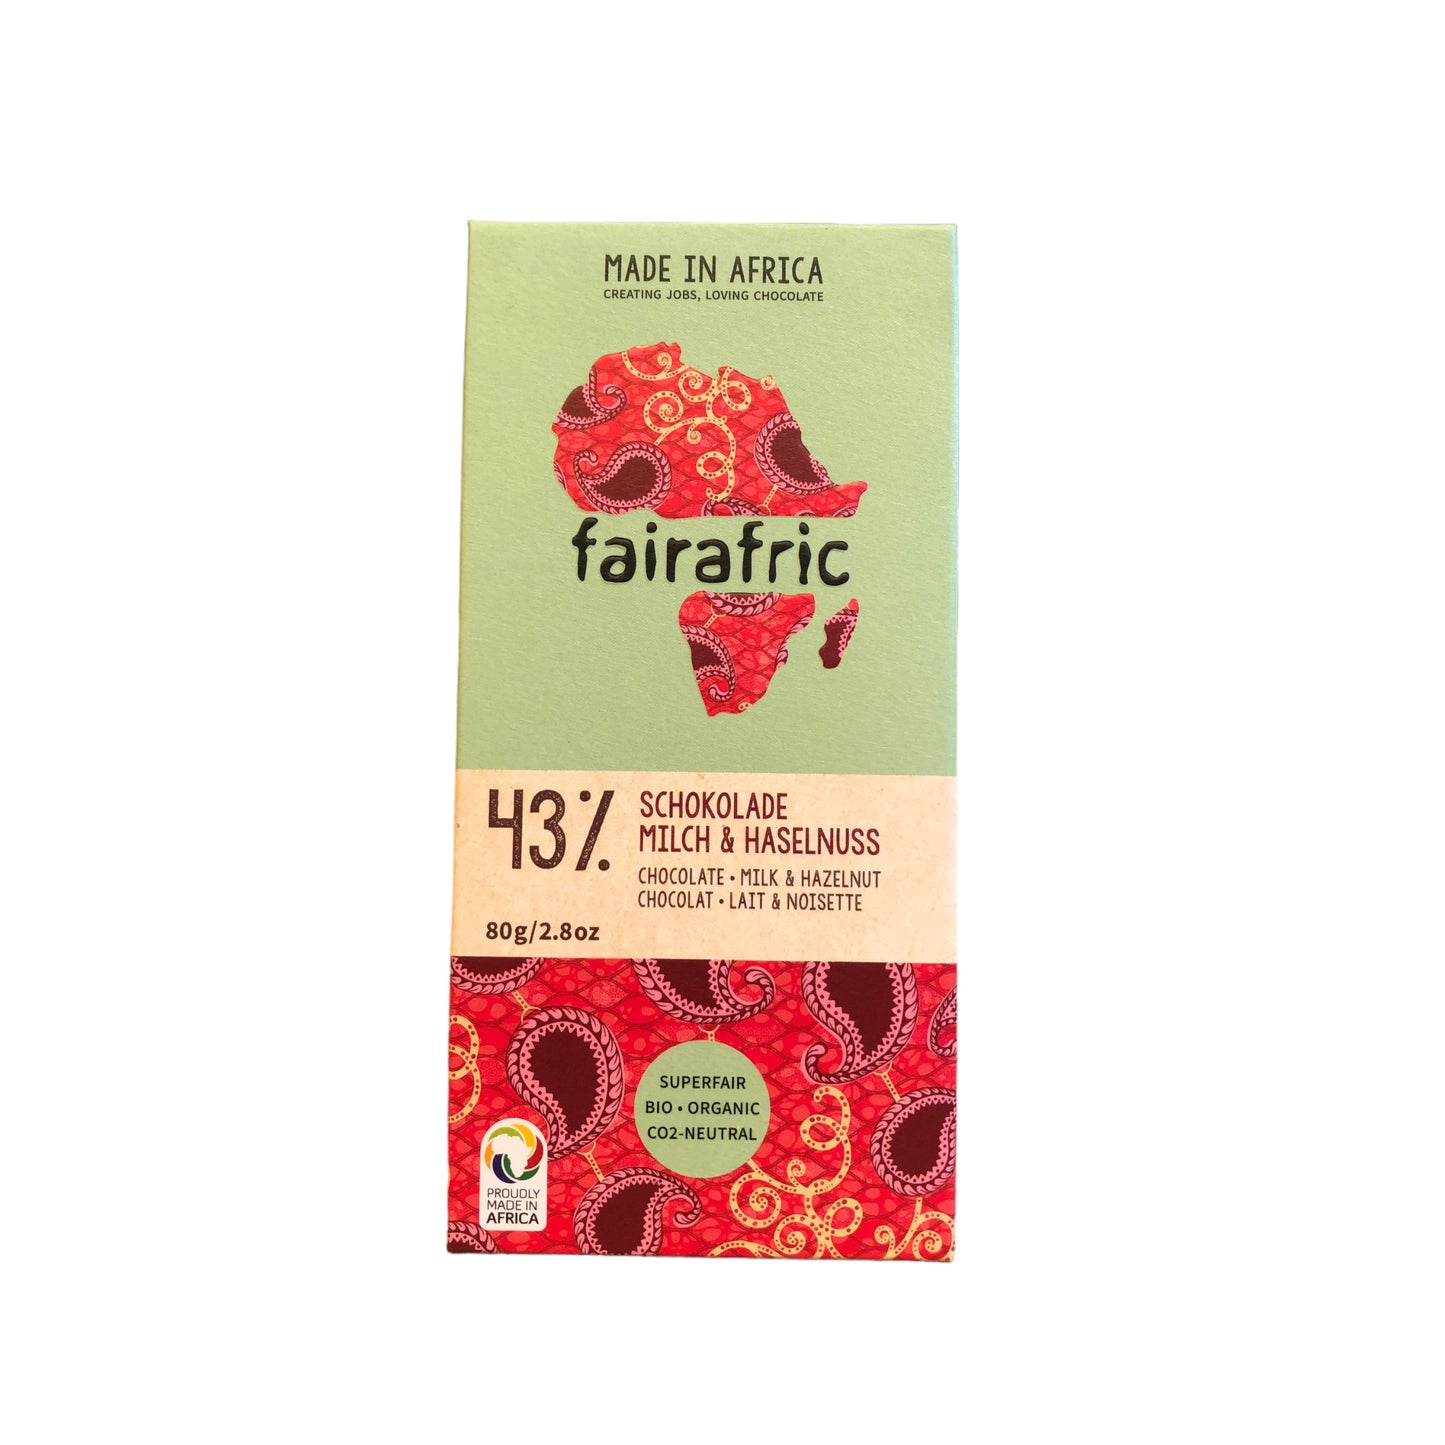 Fairafric Chocolate